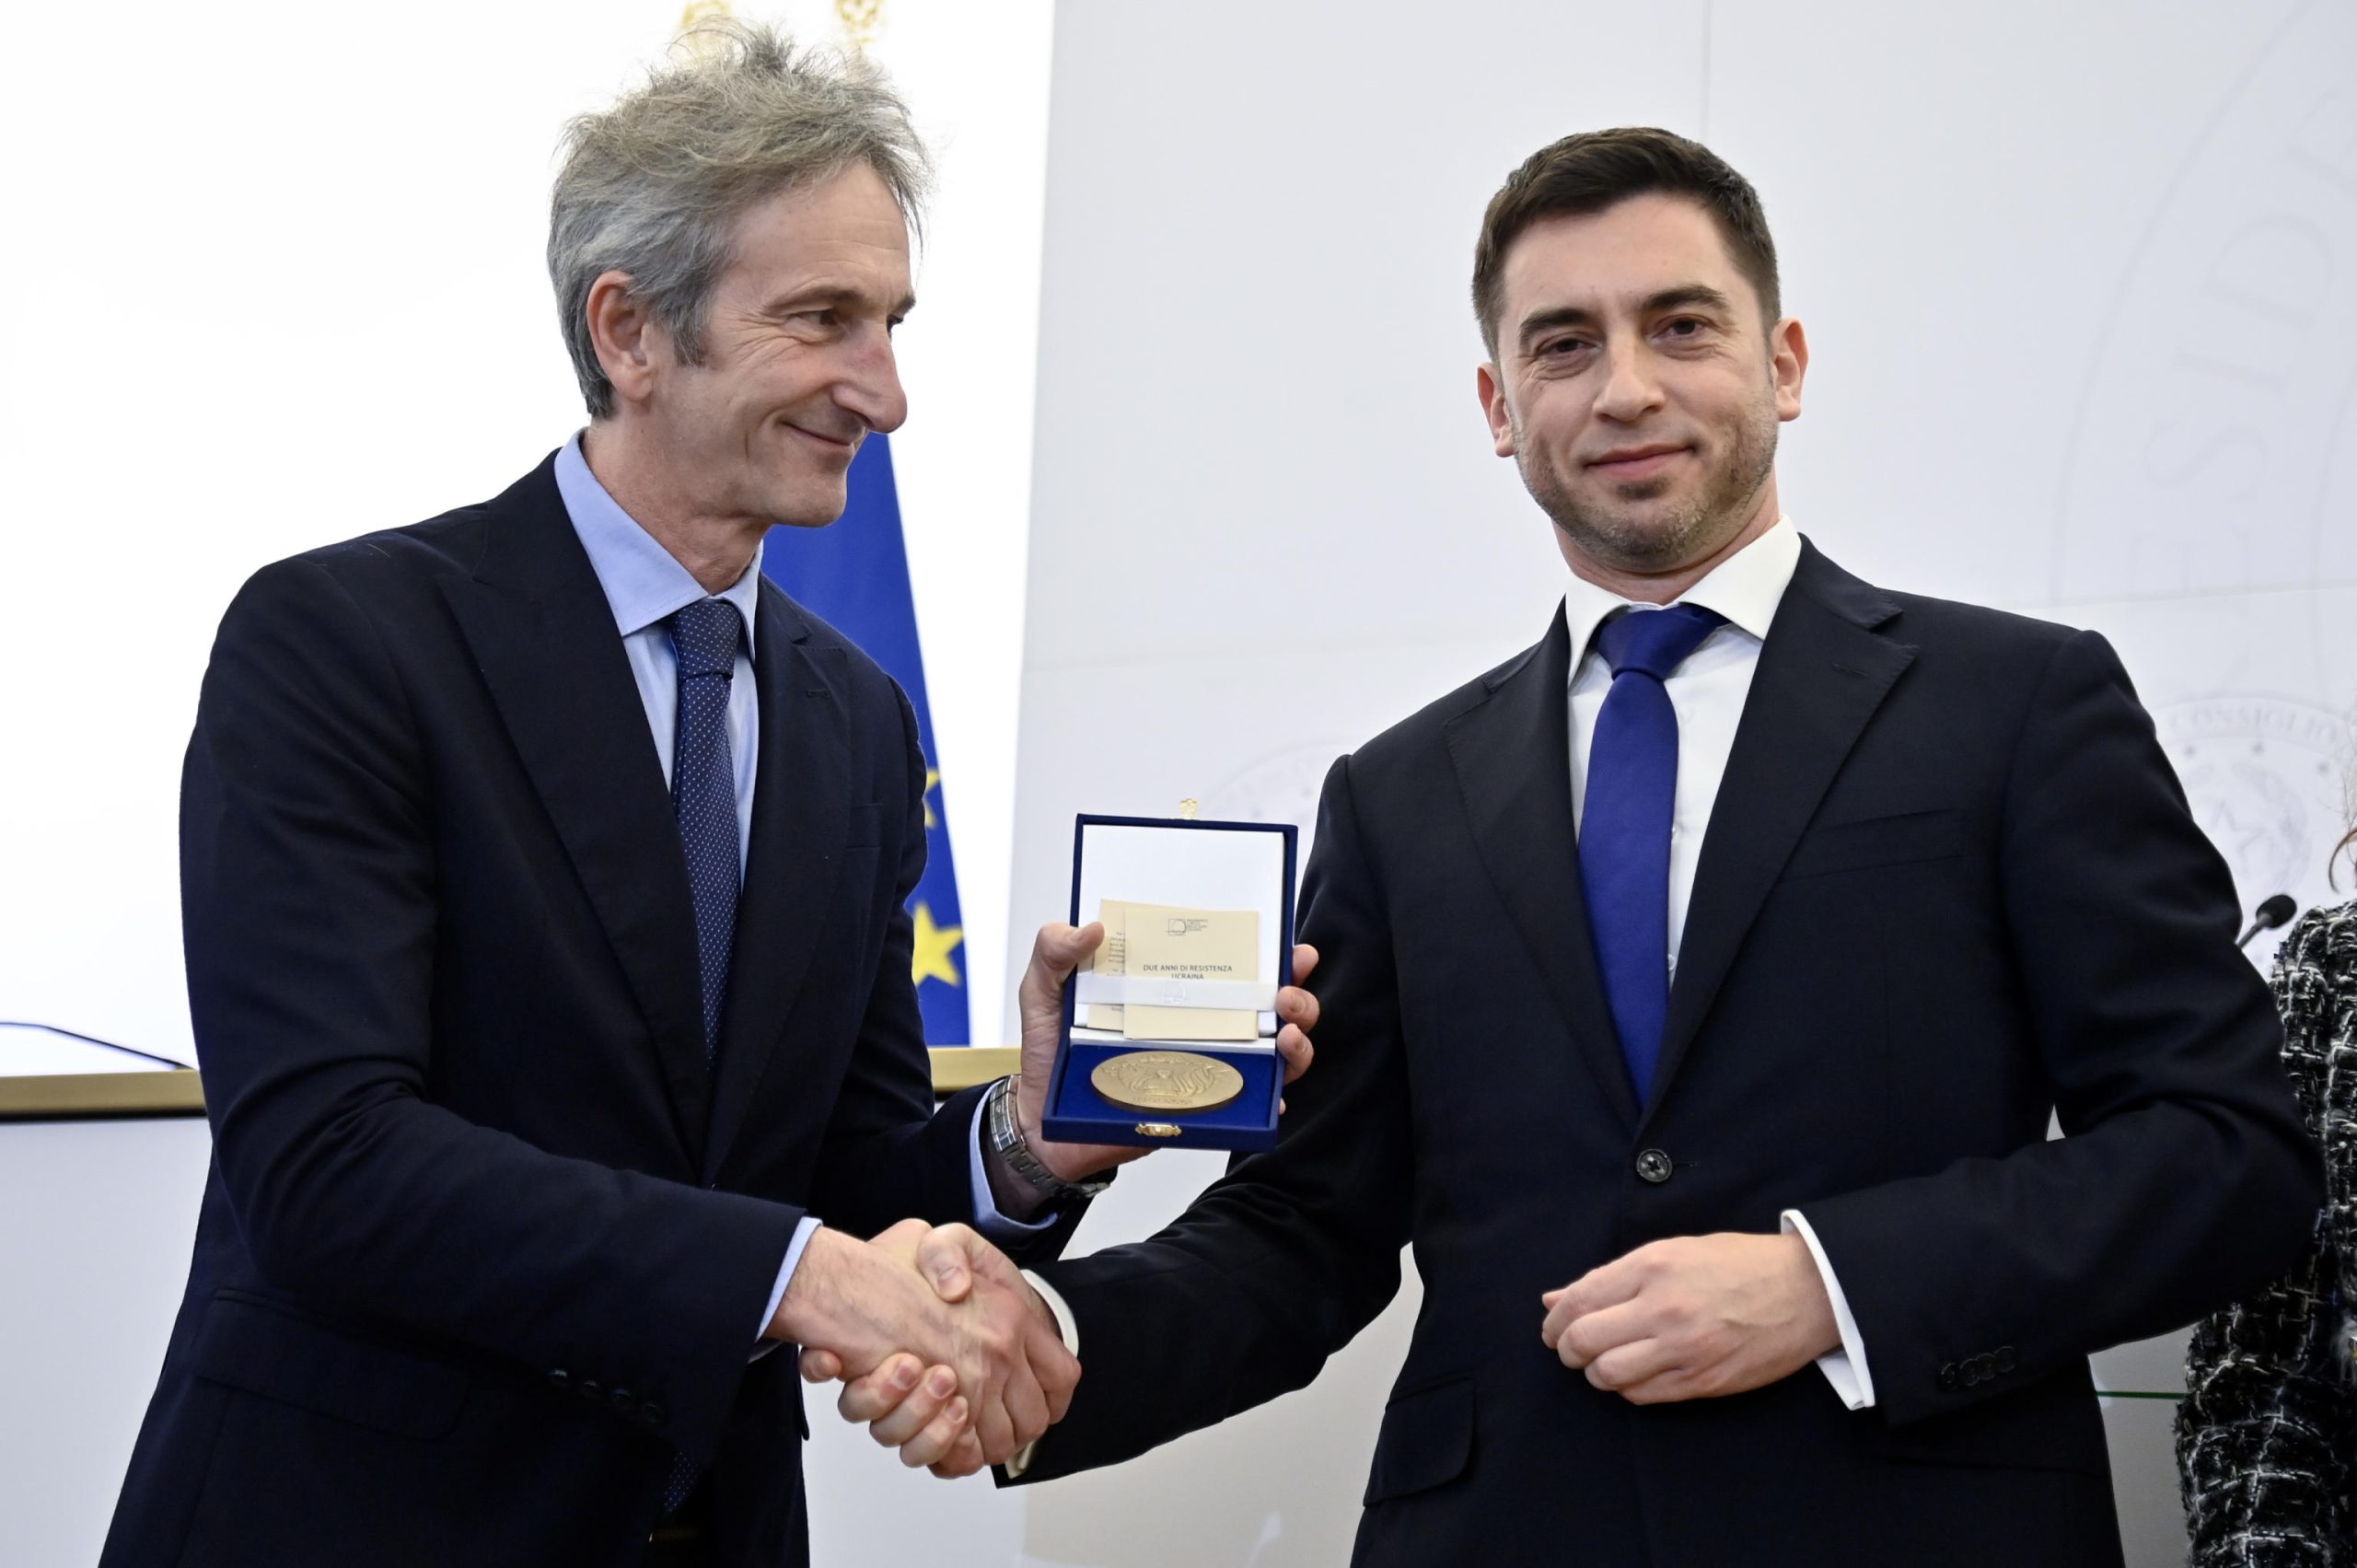 La presentazione della medaglia italiana commemorativa alla resistenza ucraina con Paolo Perrone, presidente della Zecca dello Stato, Oleksandr Kapustin consigliere dell’Ambasciata ucraina in Italia